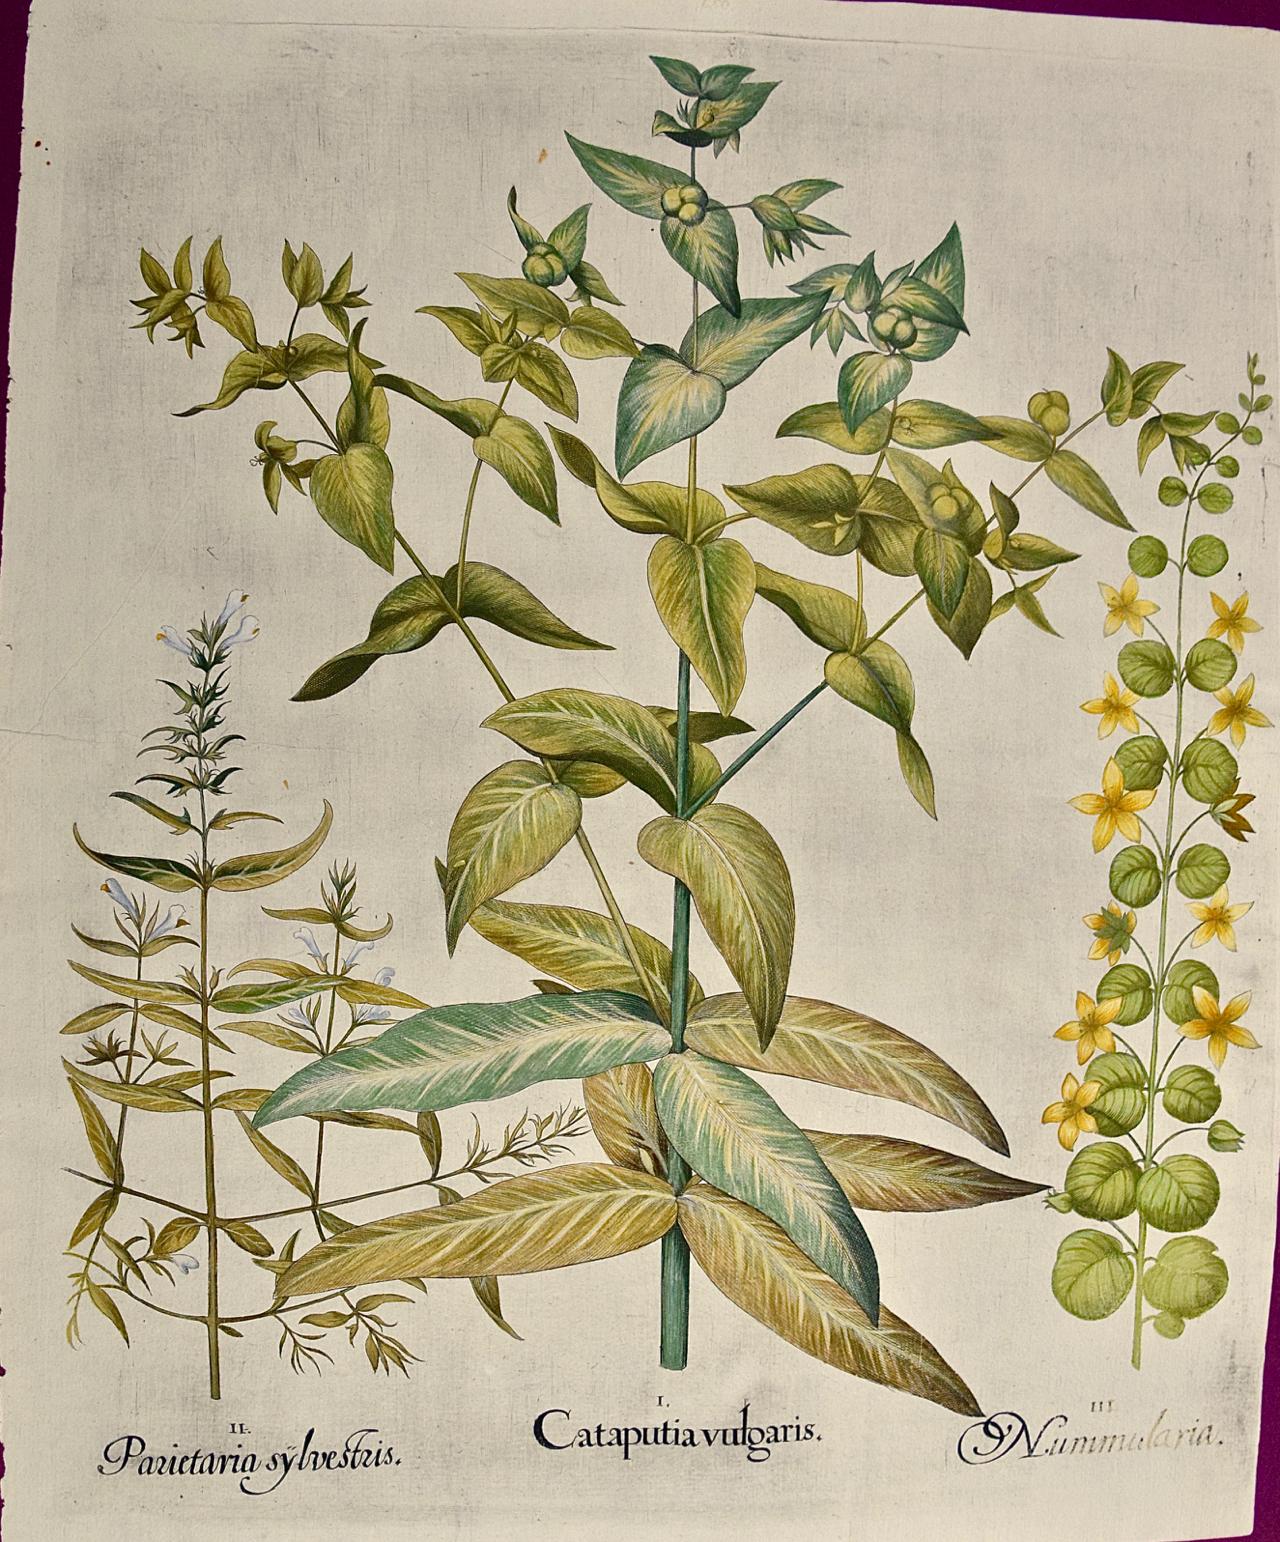 Basilius Besler Figurative Print – Blühende Liliengewächse: Ein handkolorierter botanischer Kupferstich von Besler aus dem 17.